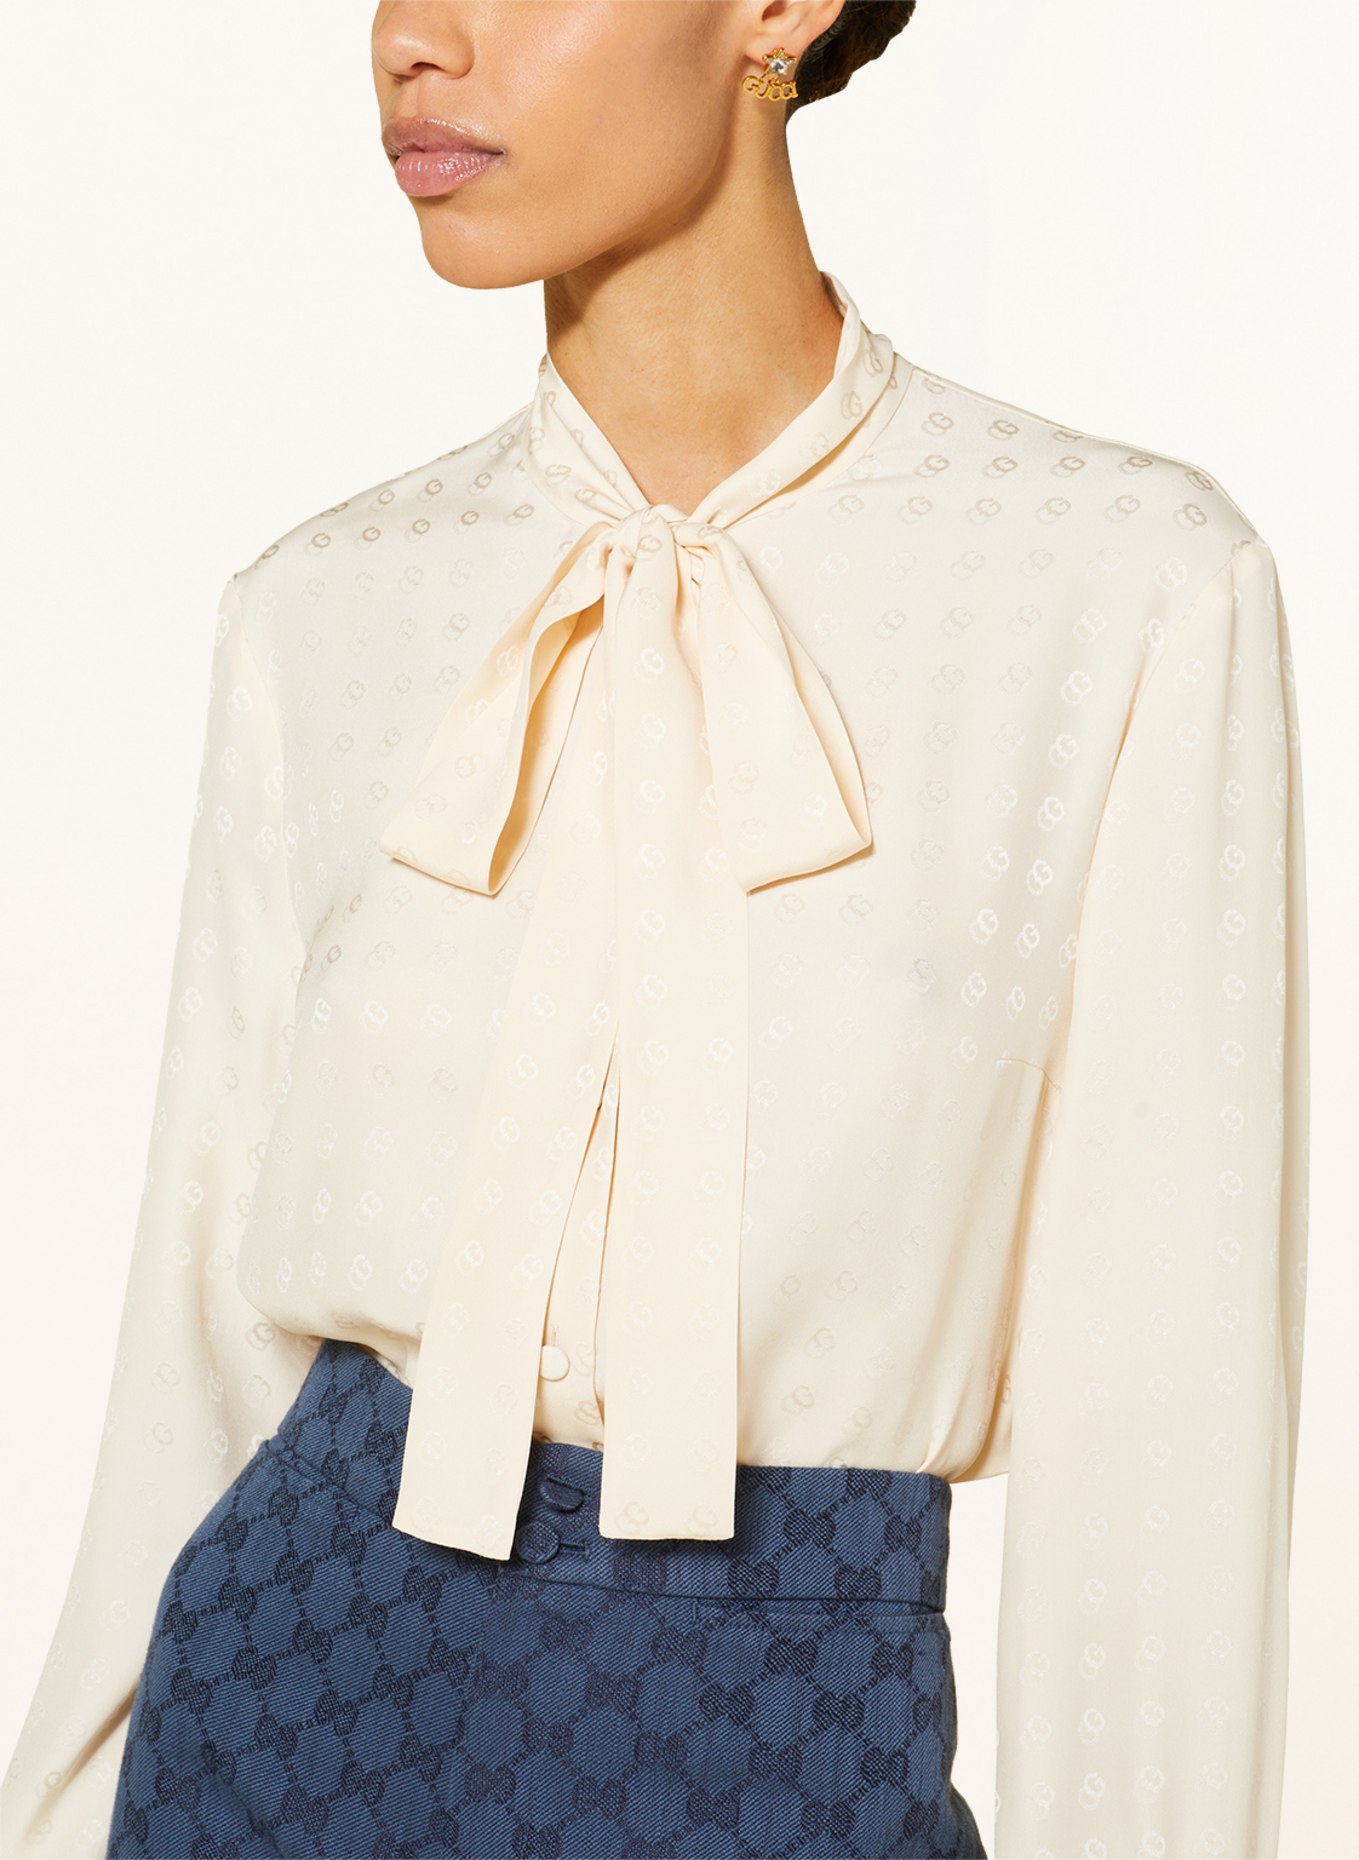 GUCCI Bow-tie blouse in silk, Color: ECRU (Image 4)